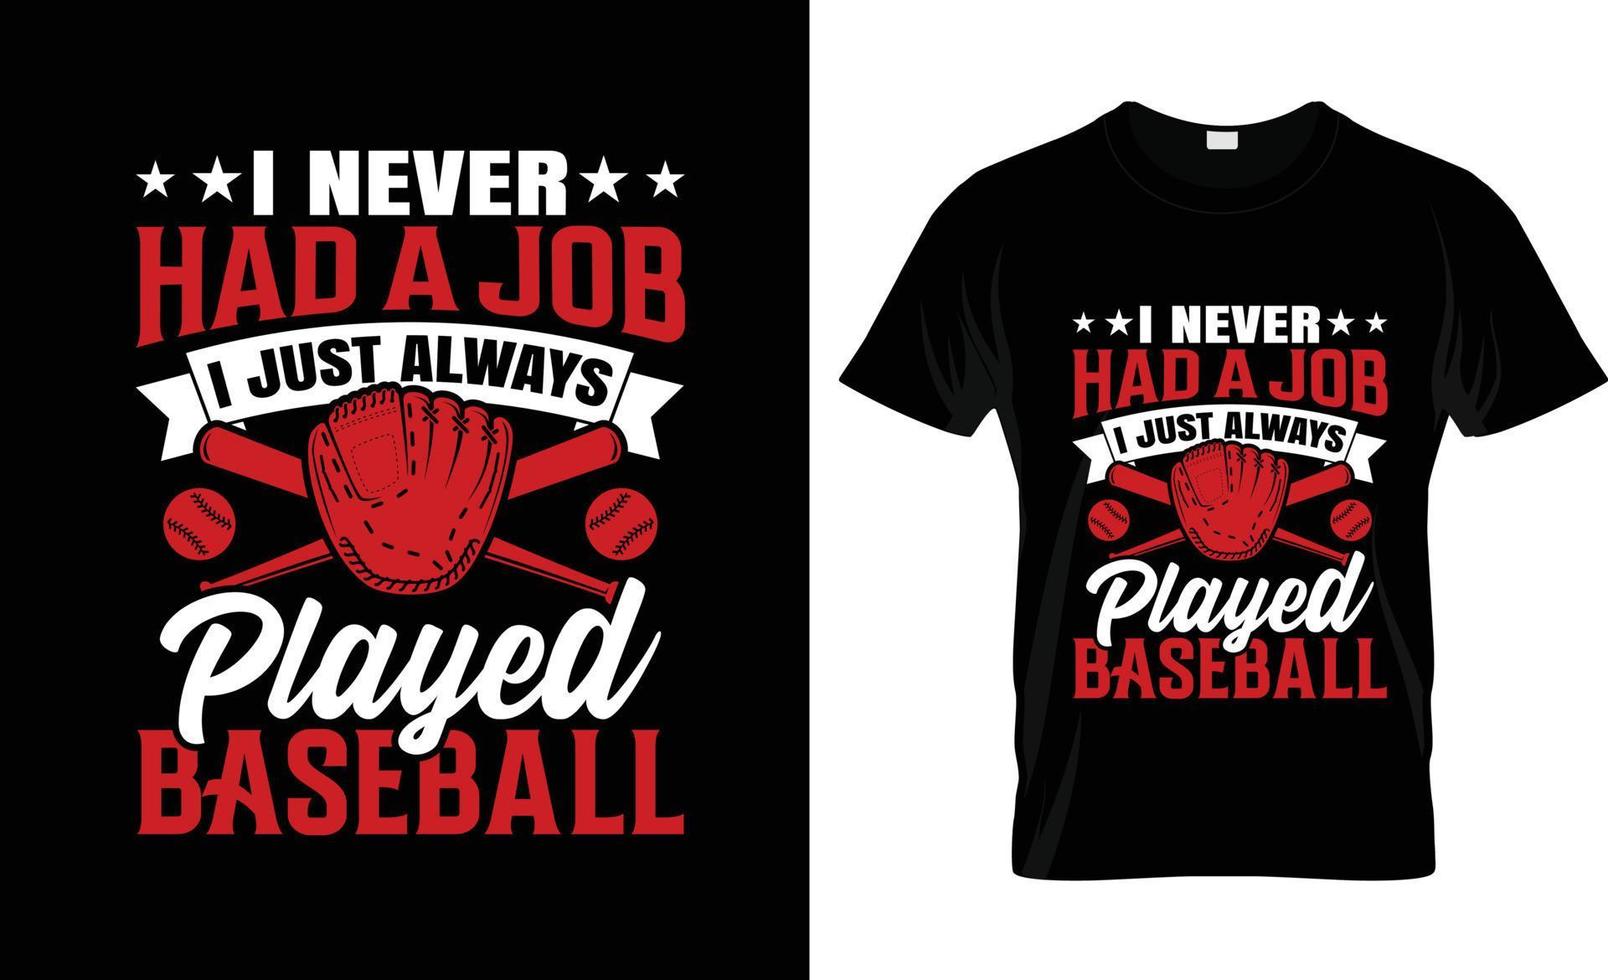 baseball maglietta disegno, baseball maglietta slogan e abbigliamento disegno, baseball tipografia, baseball vettore, baseball illustrazione vettore